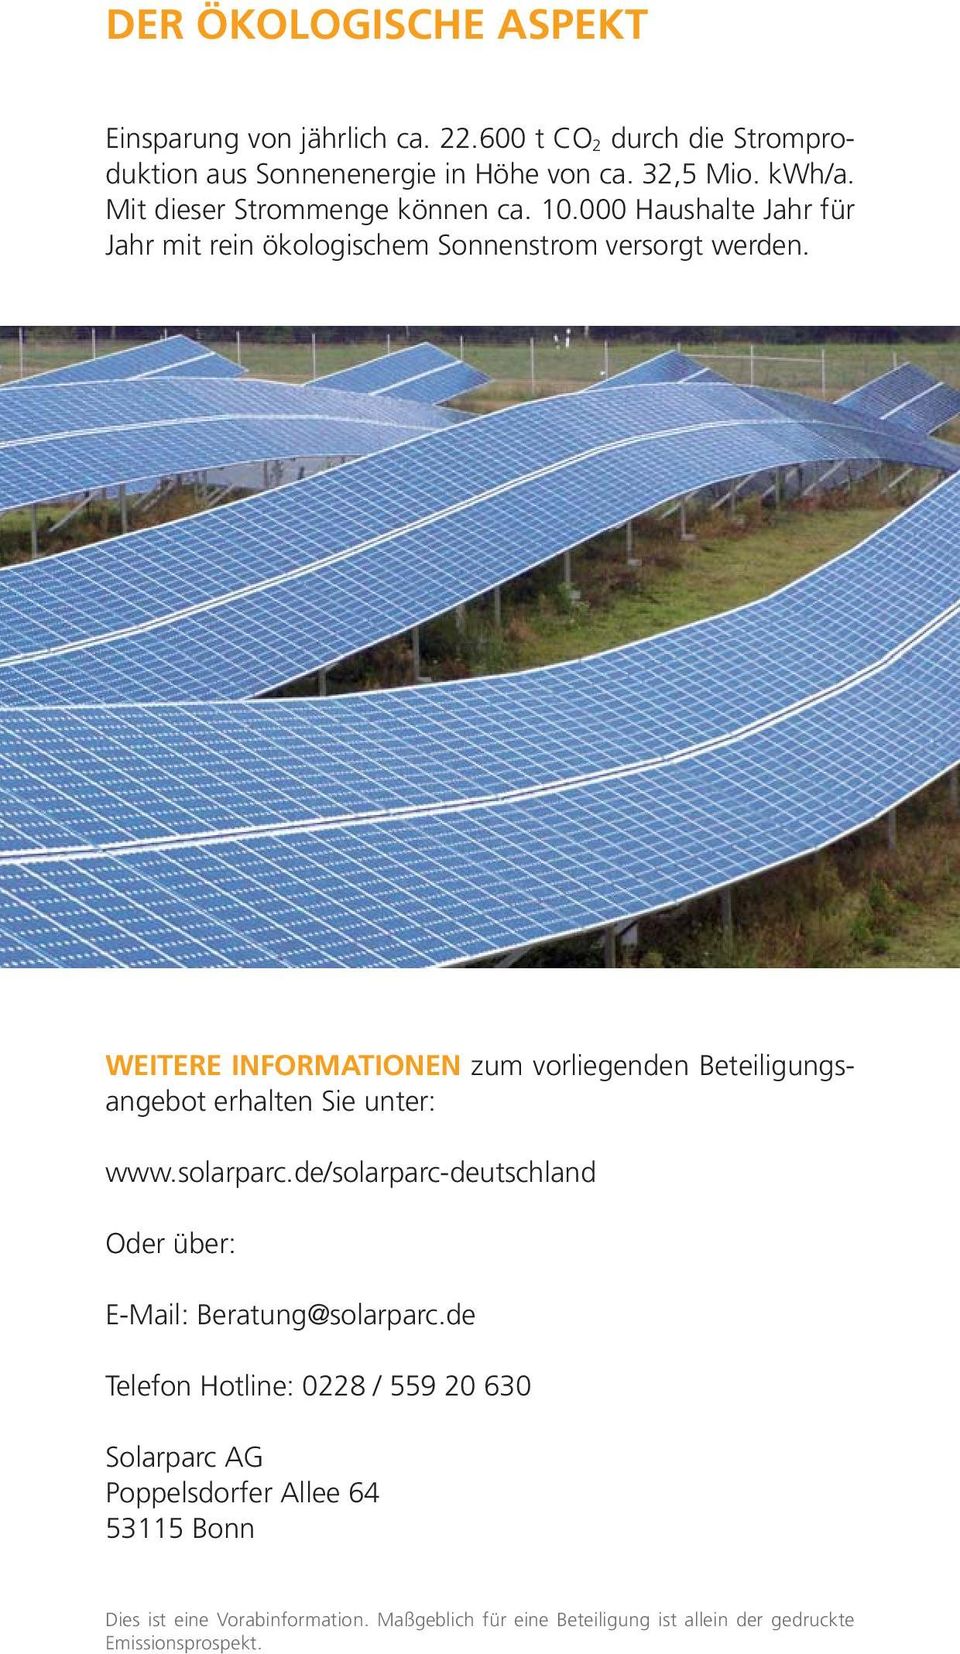 WEITERE INFORMATIONEN zum vorliegenden Beteiligungsangebot erhalten Sie unter: www.solarparc.